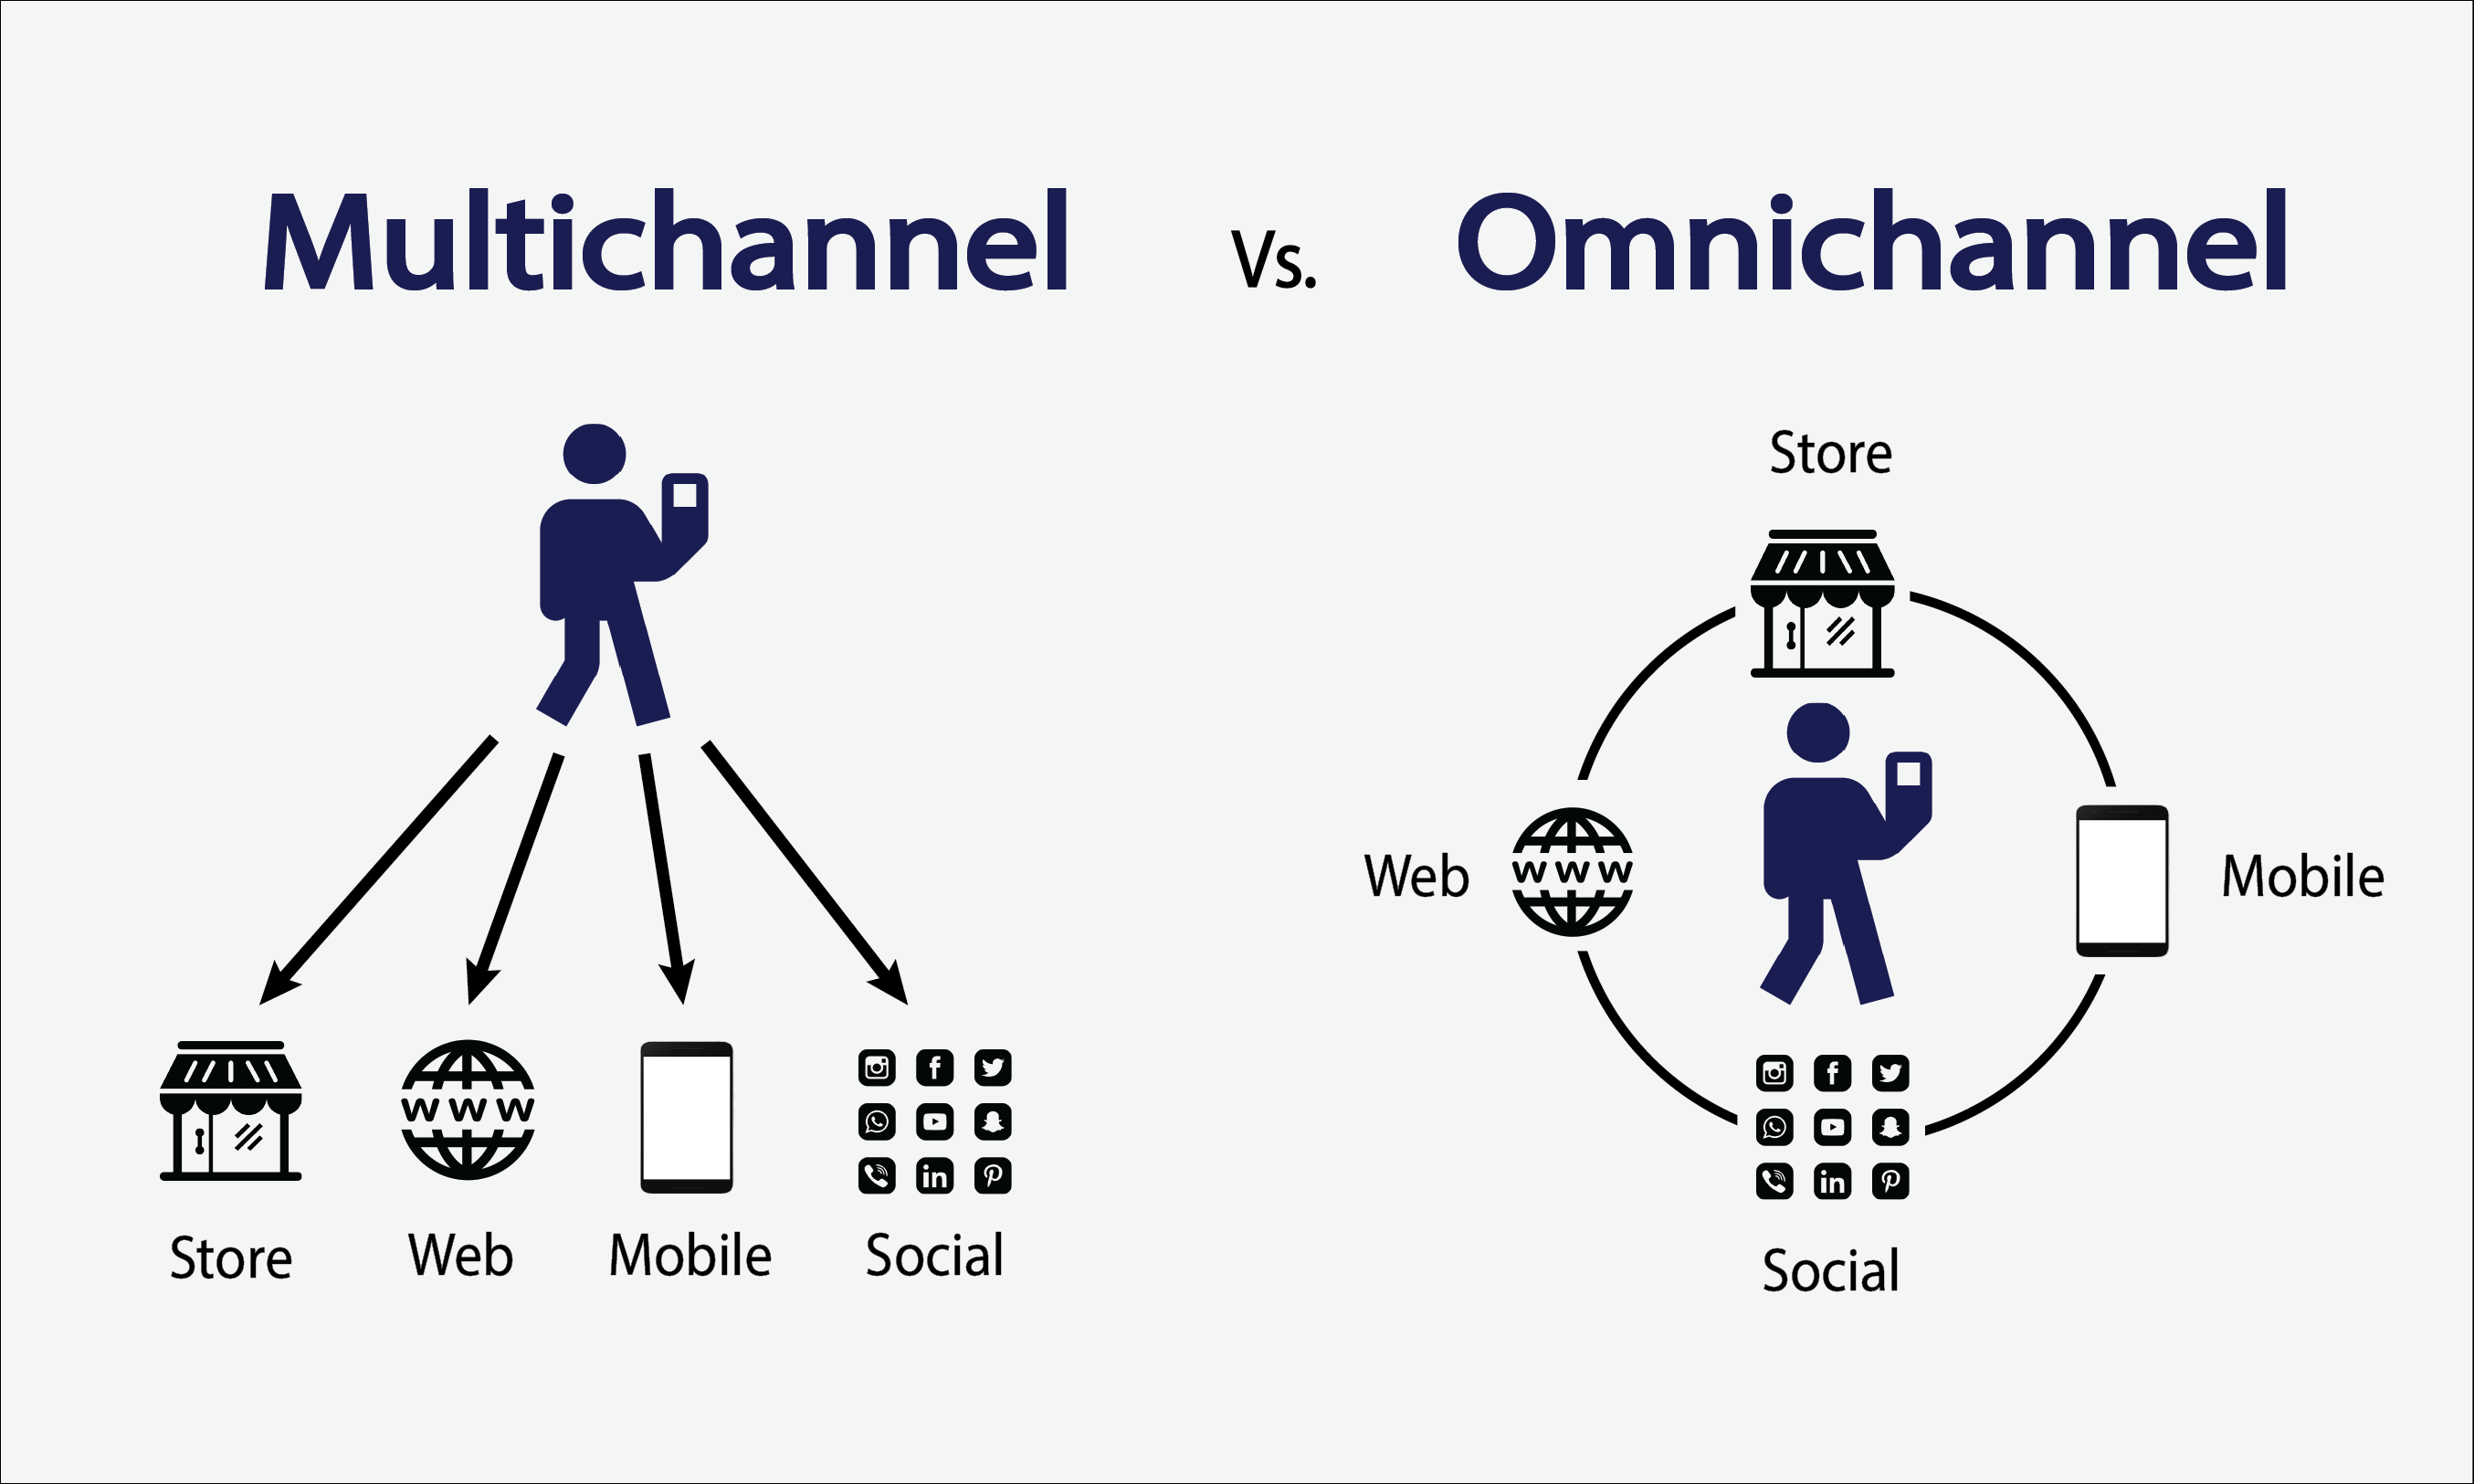 Bán lẻ đa kênh Omnichannel và Multichannel khác nhau như thế nào?